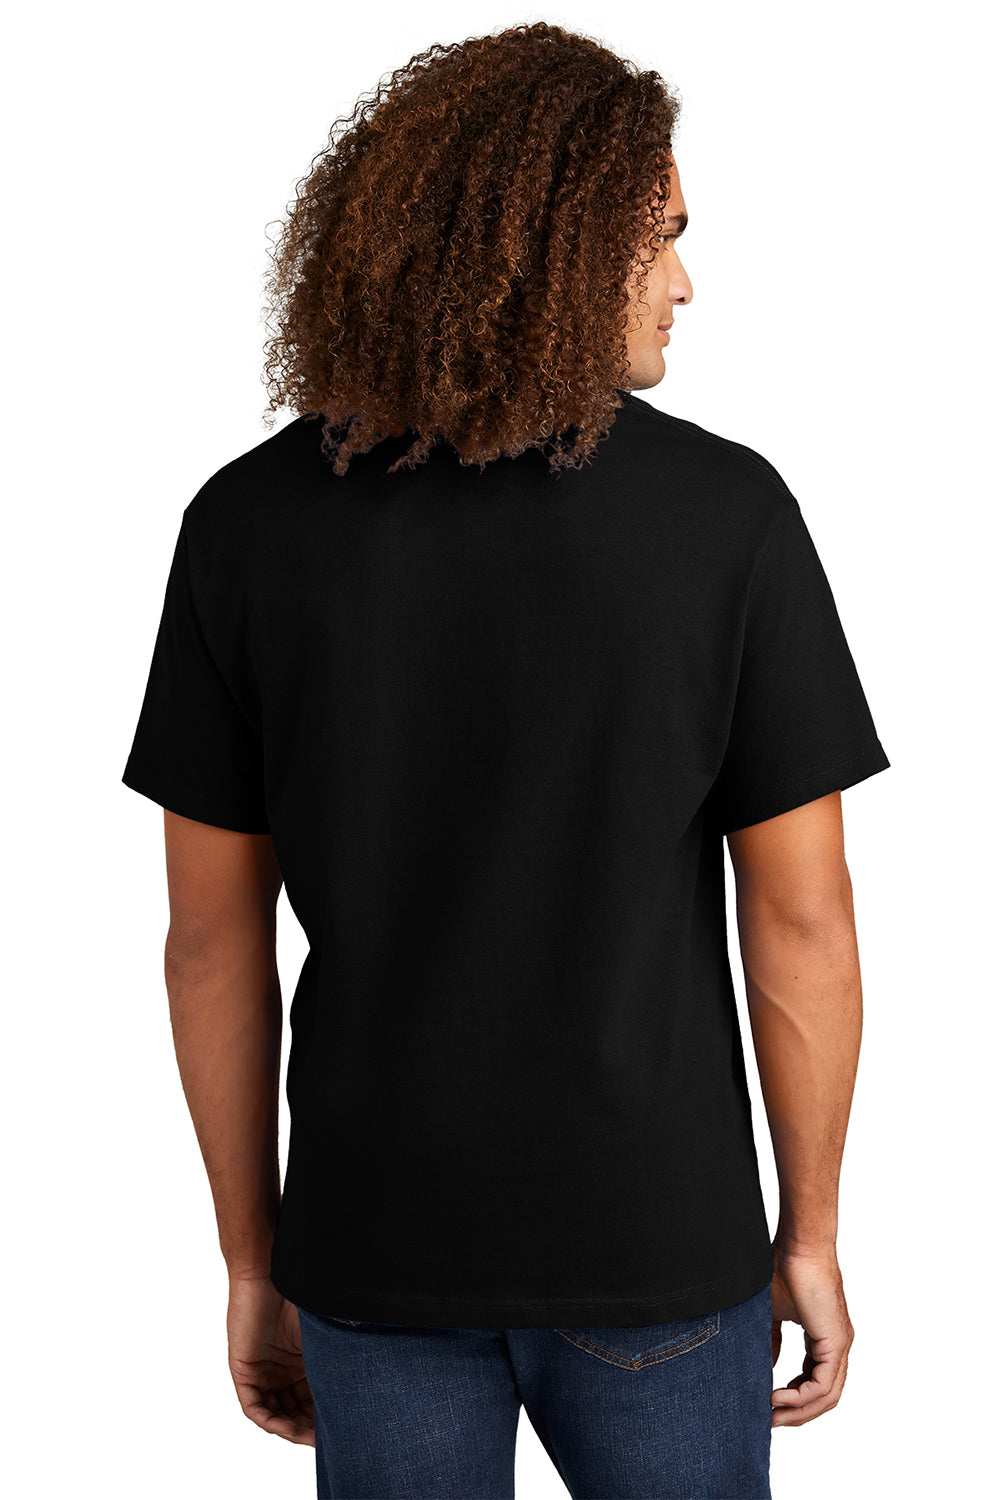 American Apparel 1301/AL1301 Mens Short Sleeve Crewneck T-Shirt Black Model Back